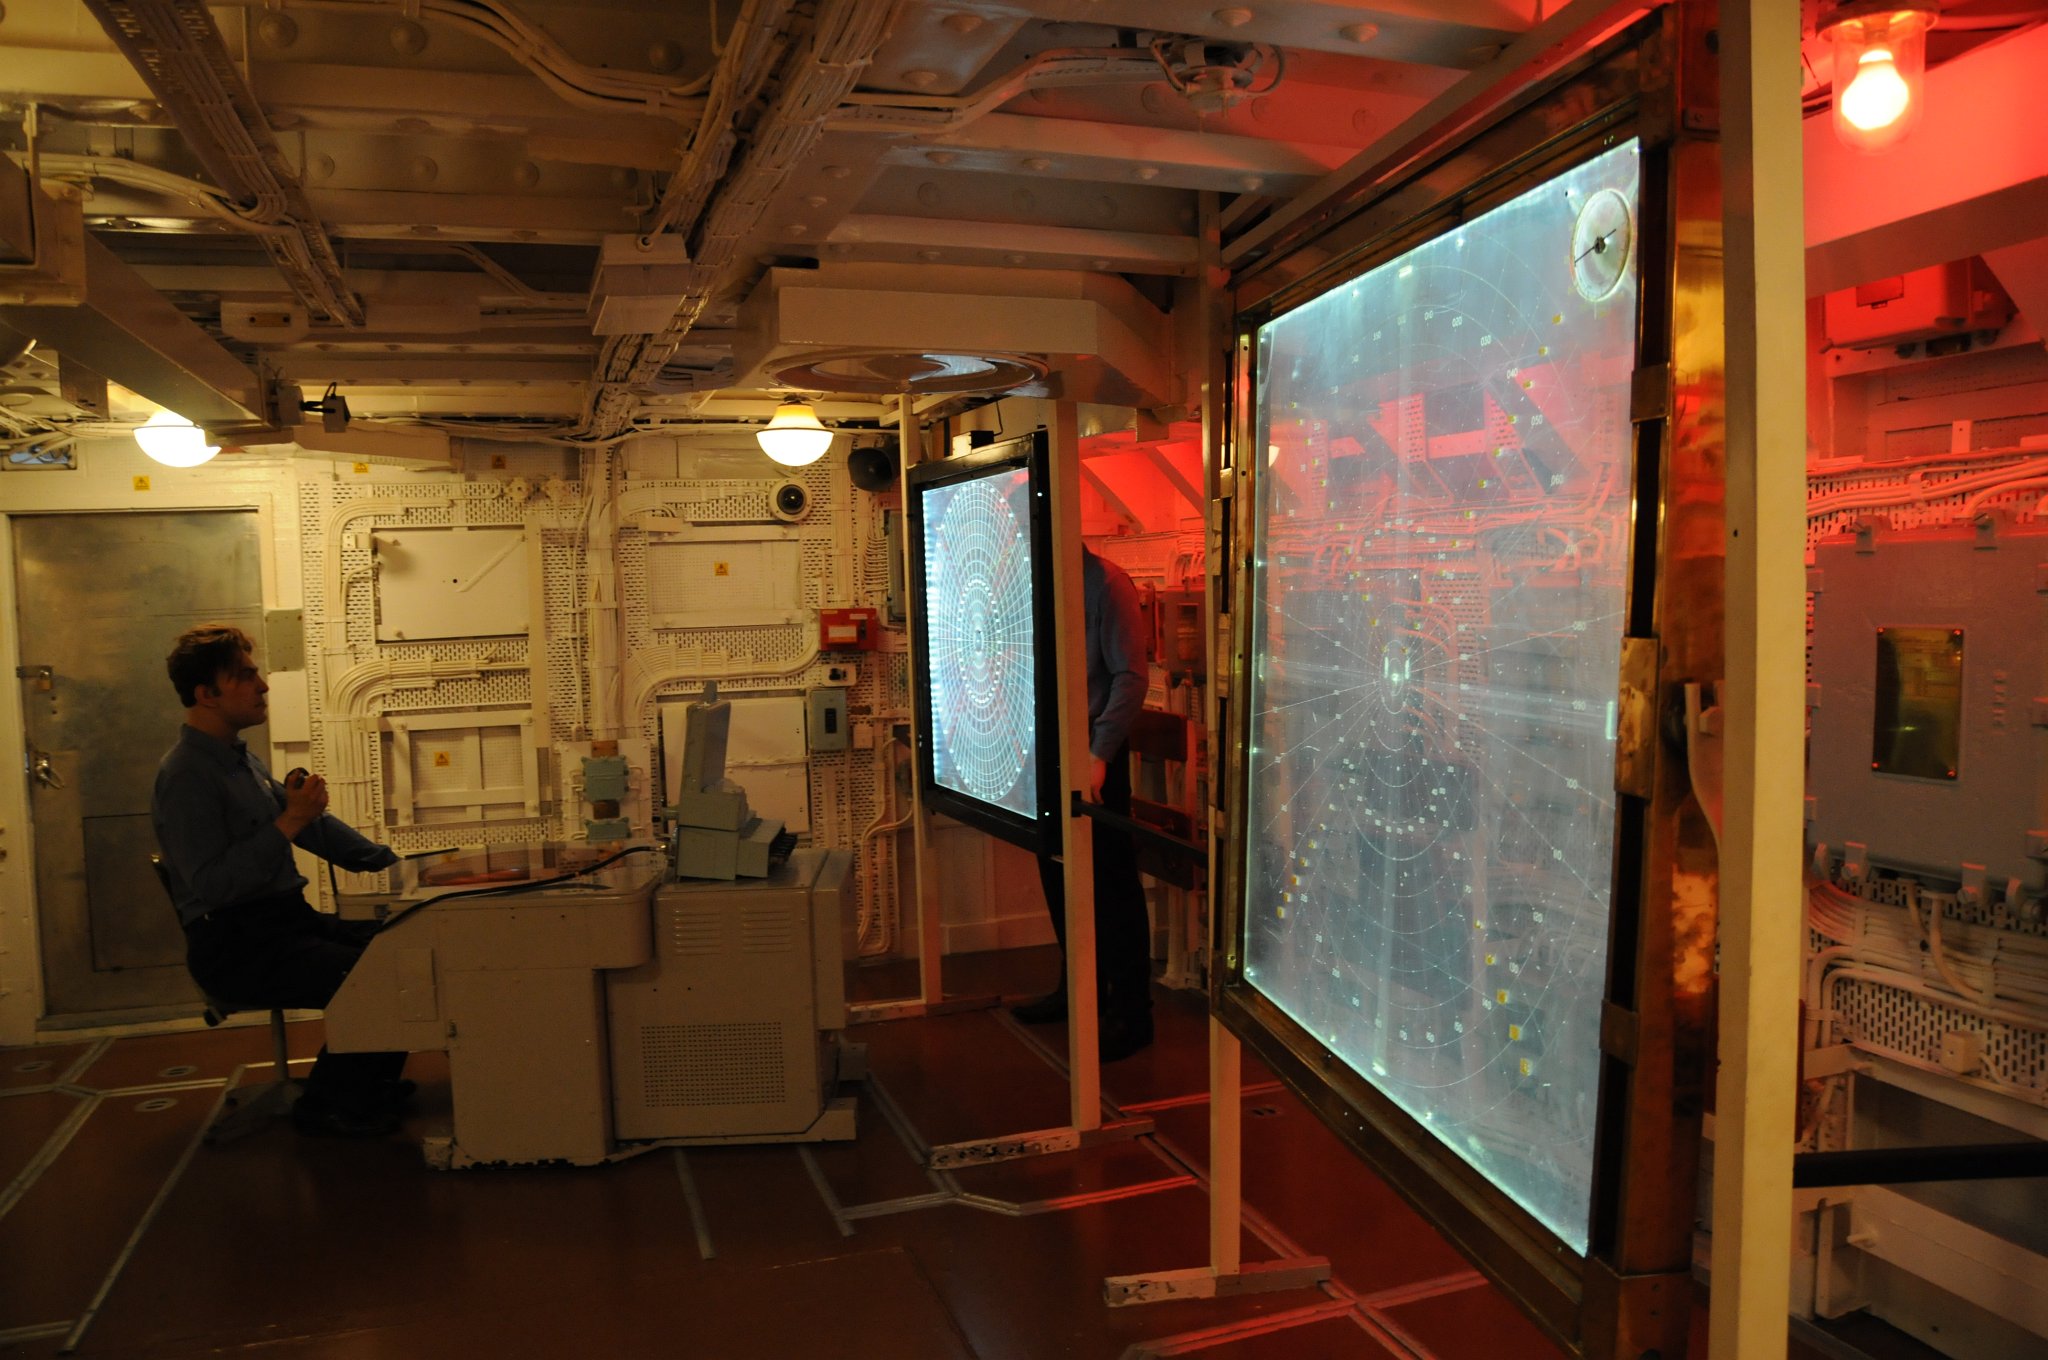 DSC_4898.JPG - Informace z radaru, sonaru a další zprávy byly shromážďovány a zobrazovány v operační místnosti, aby kapitán mohl vyhodnotit taktickou situaci.